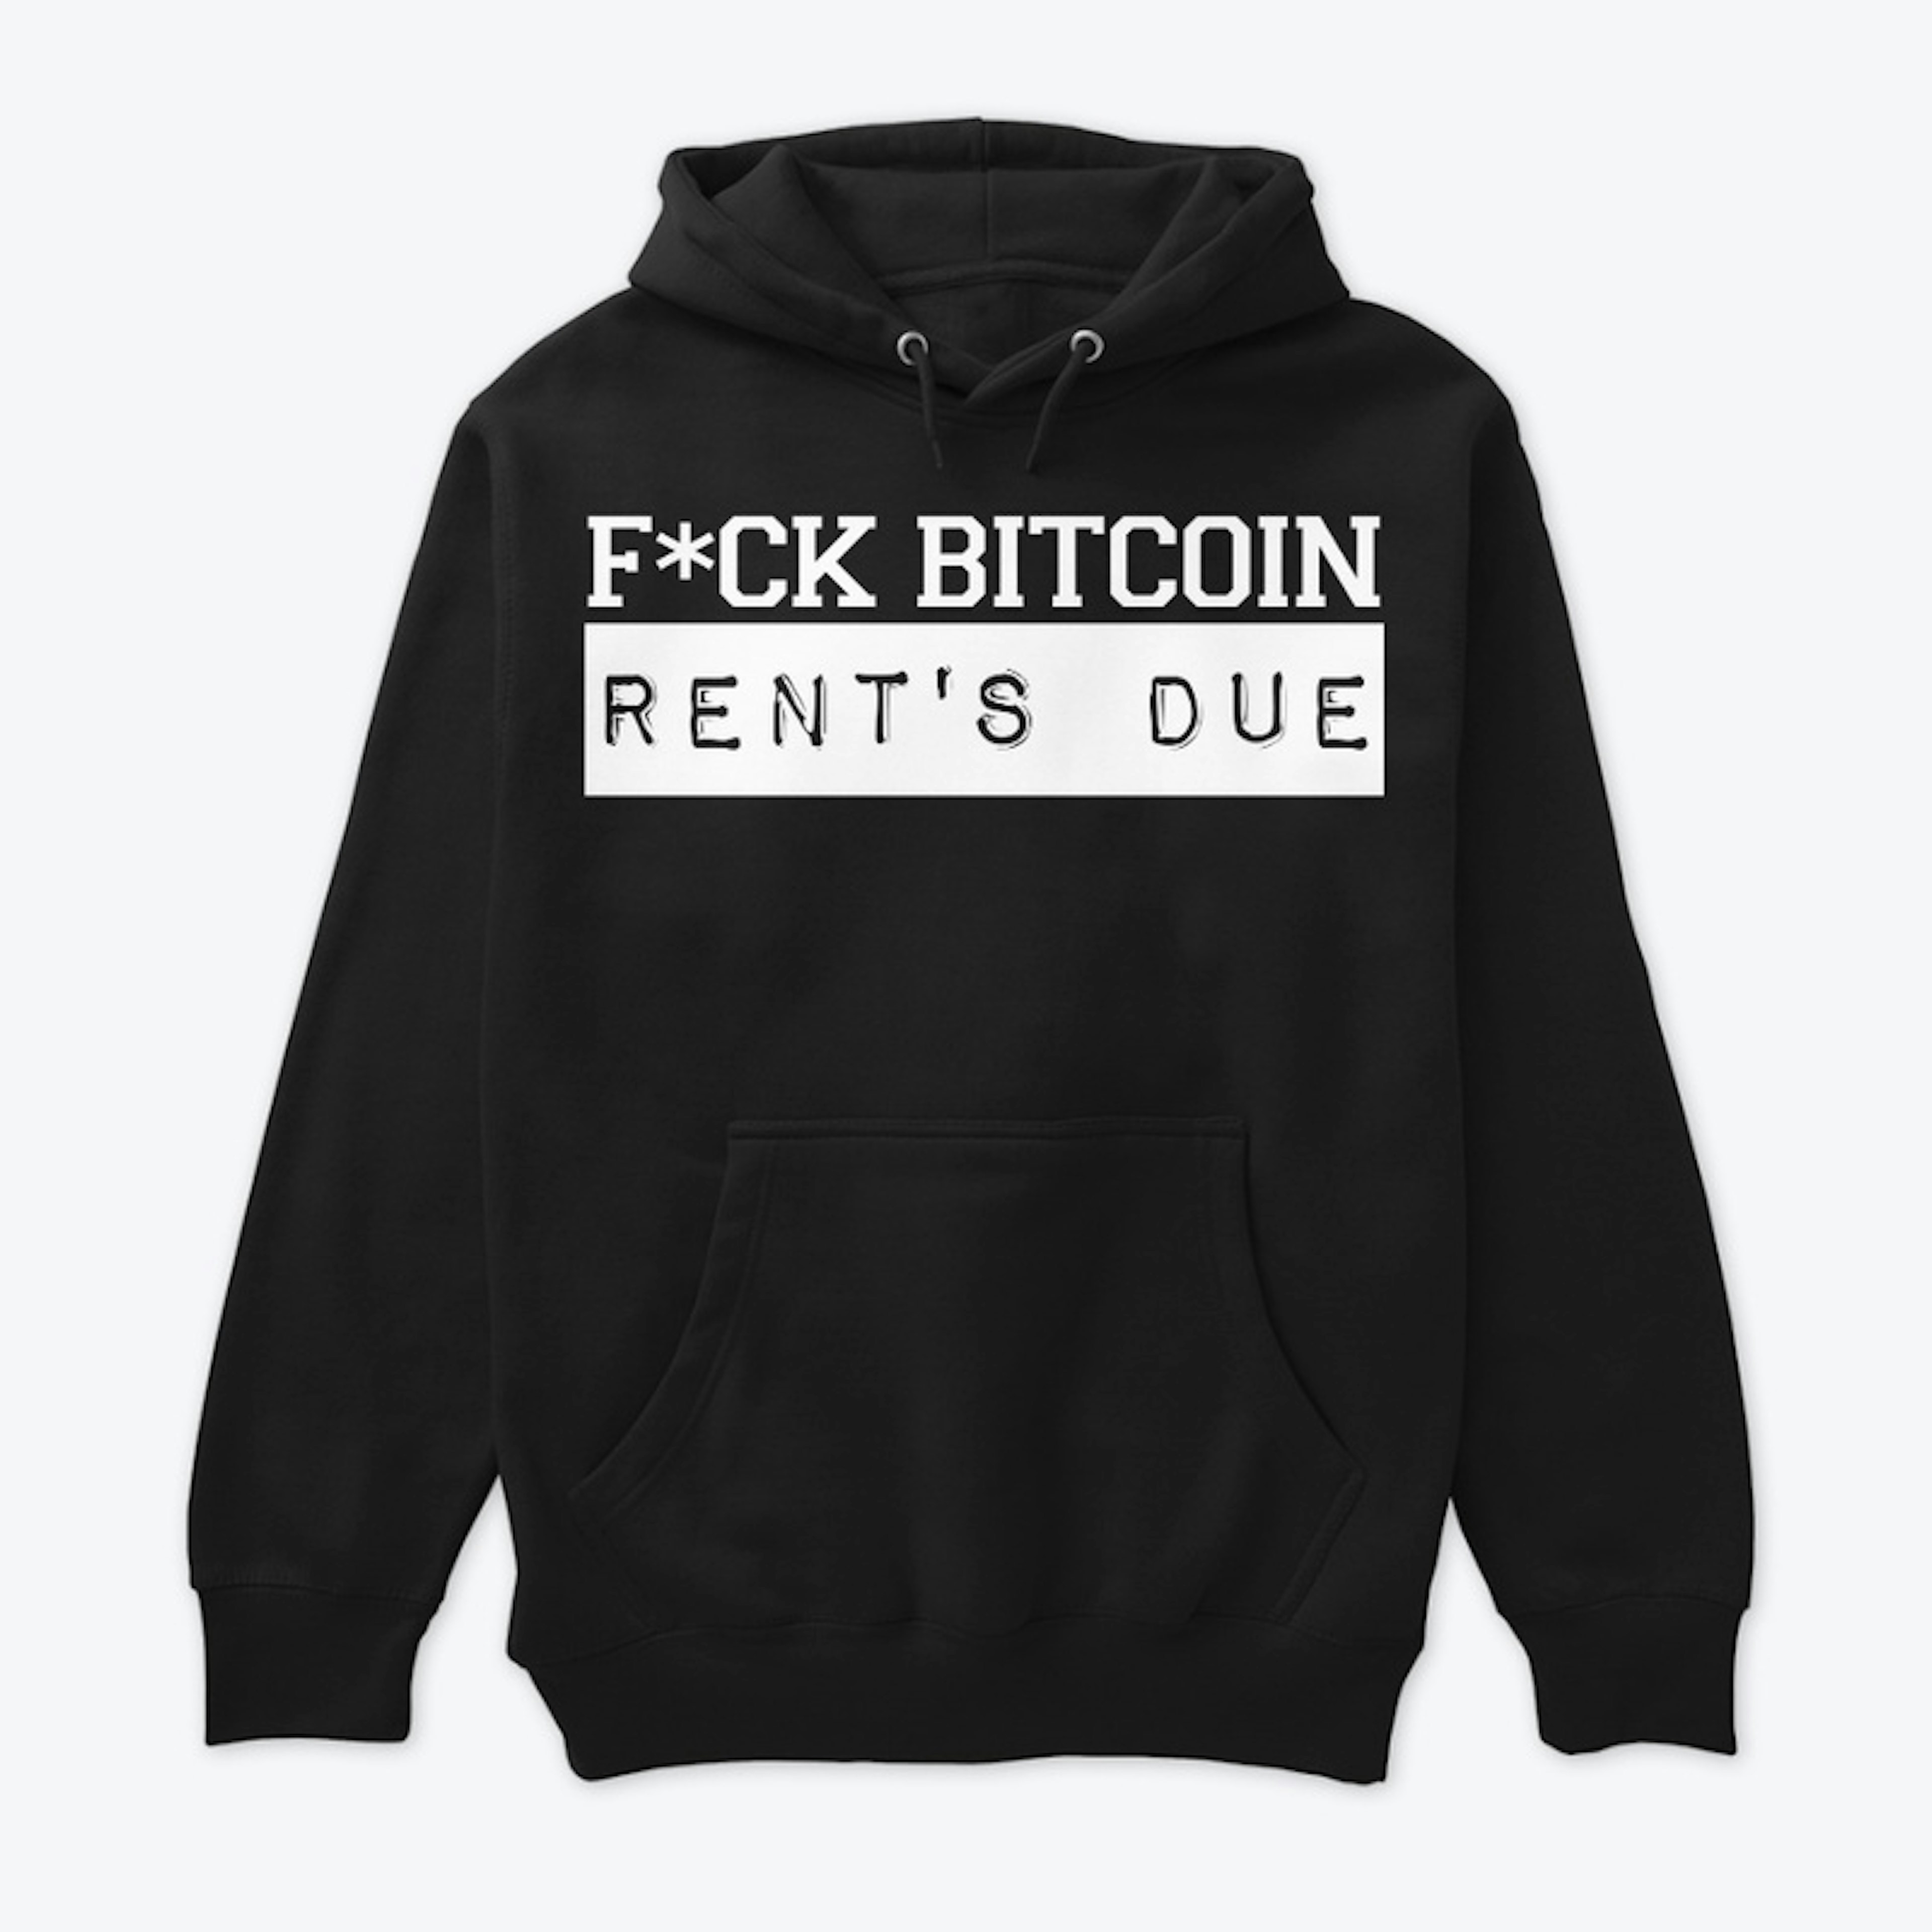 F*ck Bitcoin Rent's Due (GW)